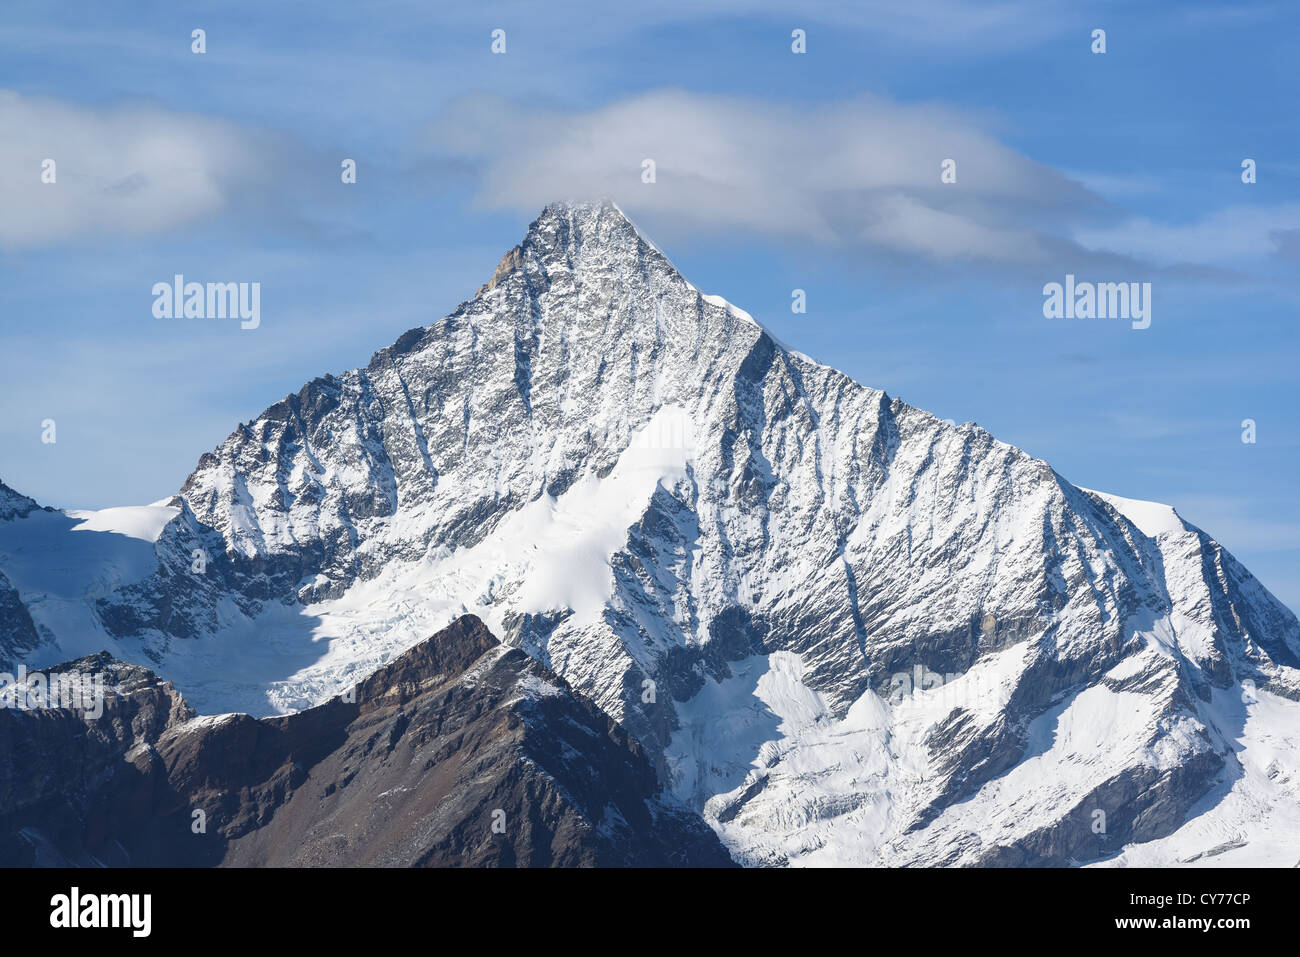 Weisshorn mountain peak, view from Gornergrat, Zermatt, Switzerland Stock Photo